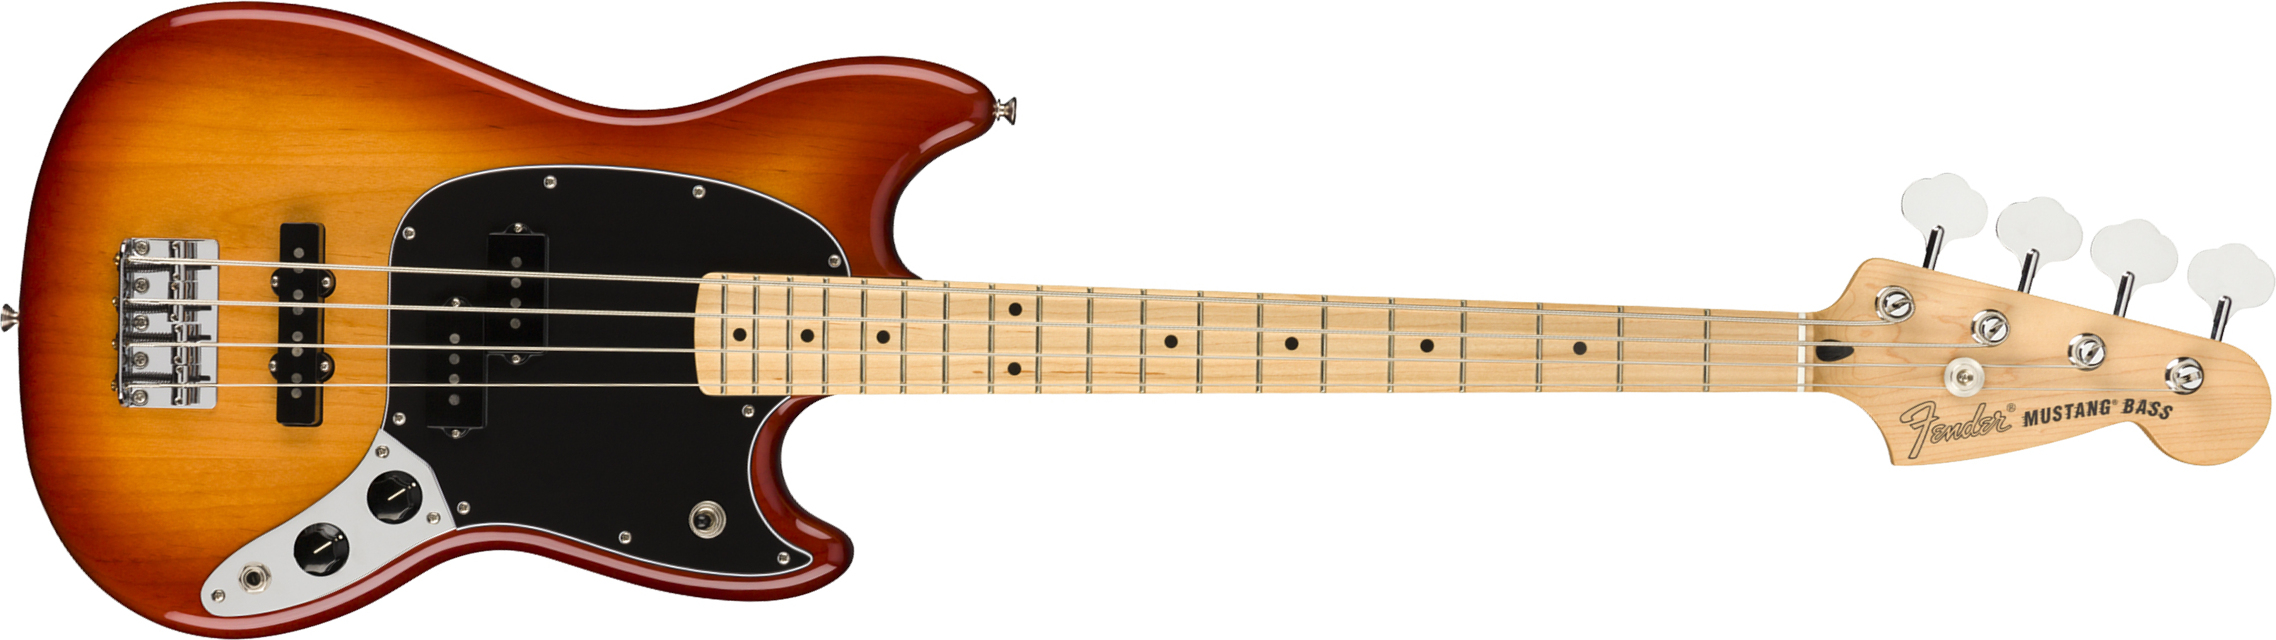 Fender Player Mustang Bass Mex Pj Mn - Sienna Sunburst - Short scale elektrische bas - Main picture